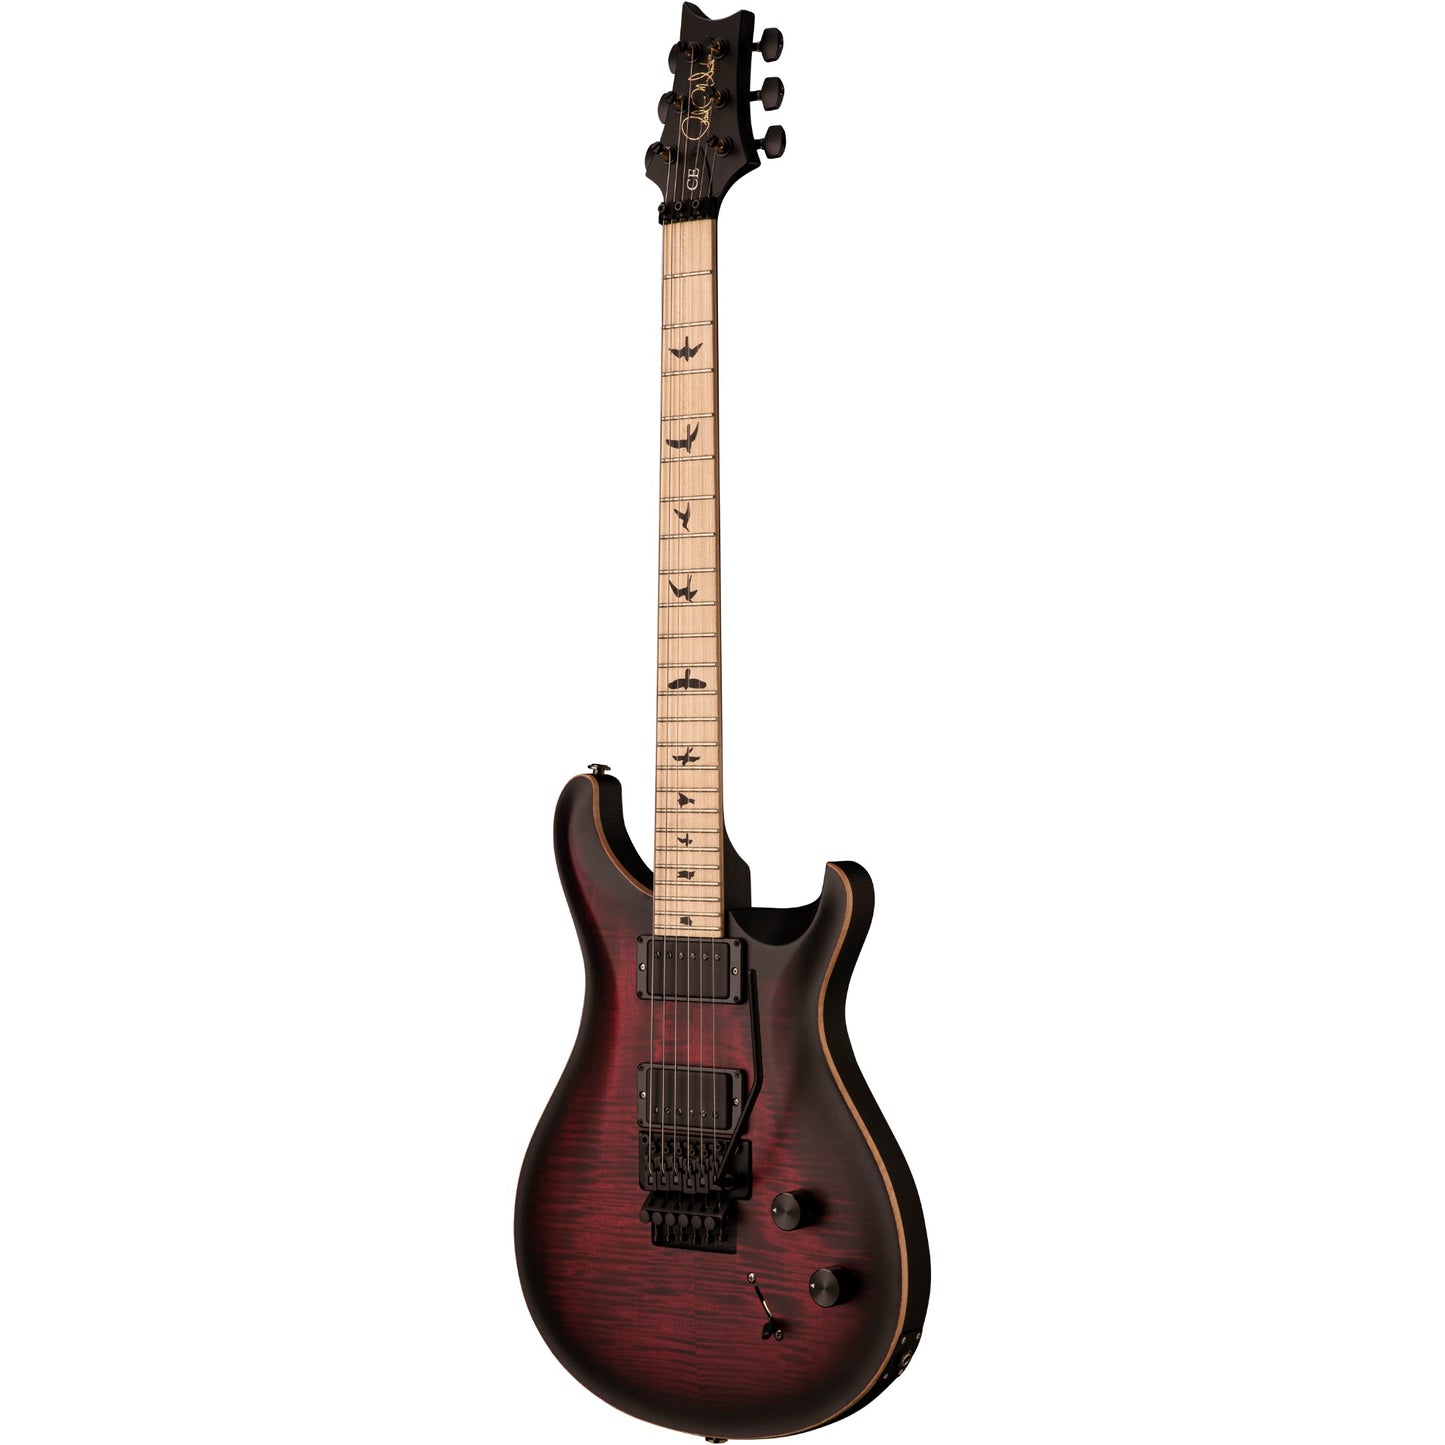 PRS DW CE 24 “Floyd” Bolt-On Electric Guitar - Waring Burst